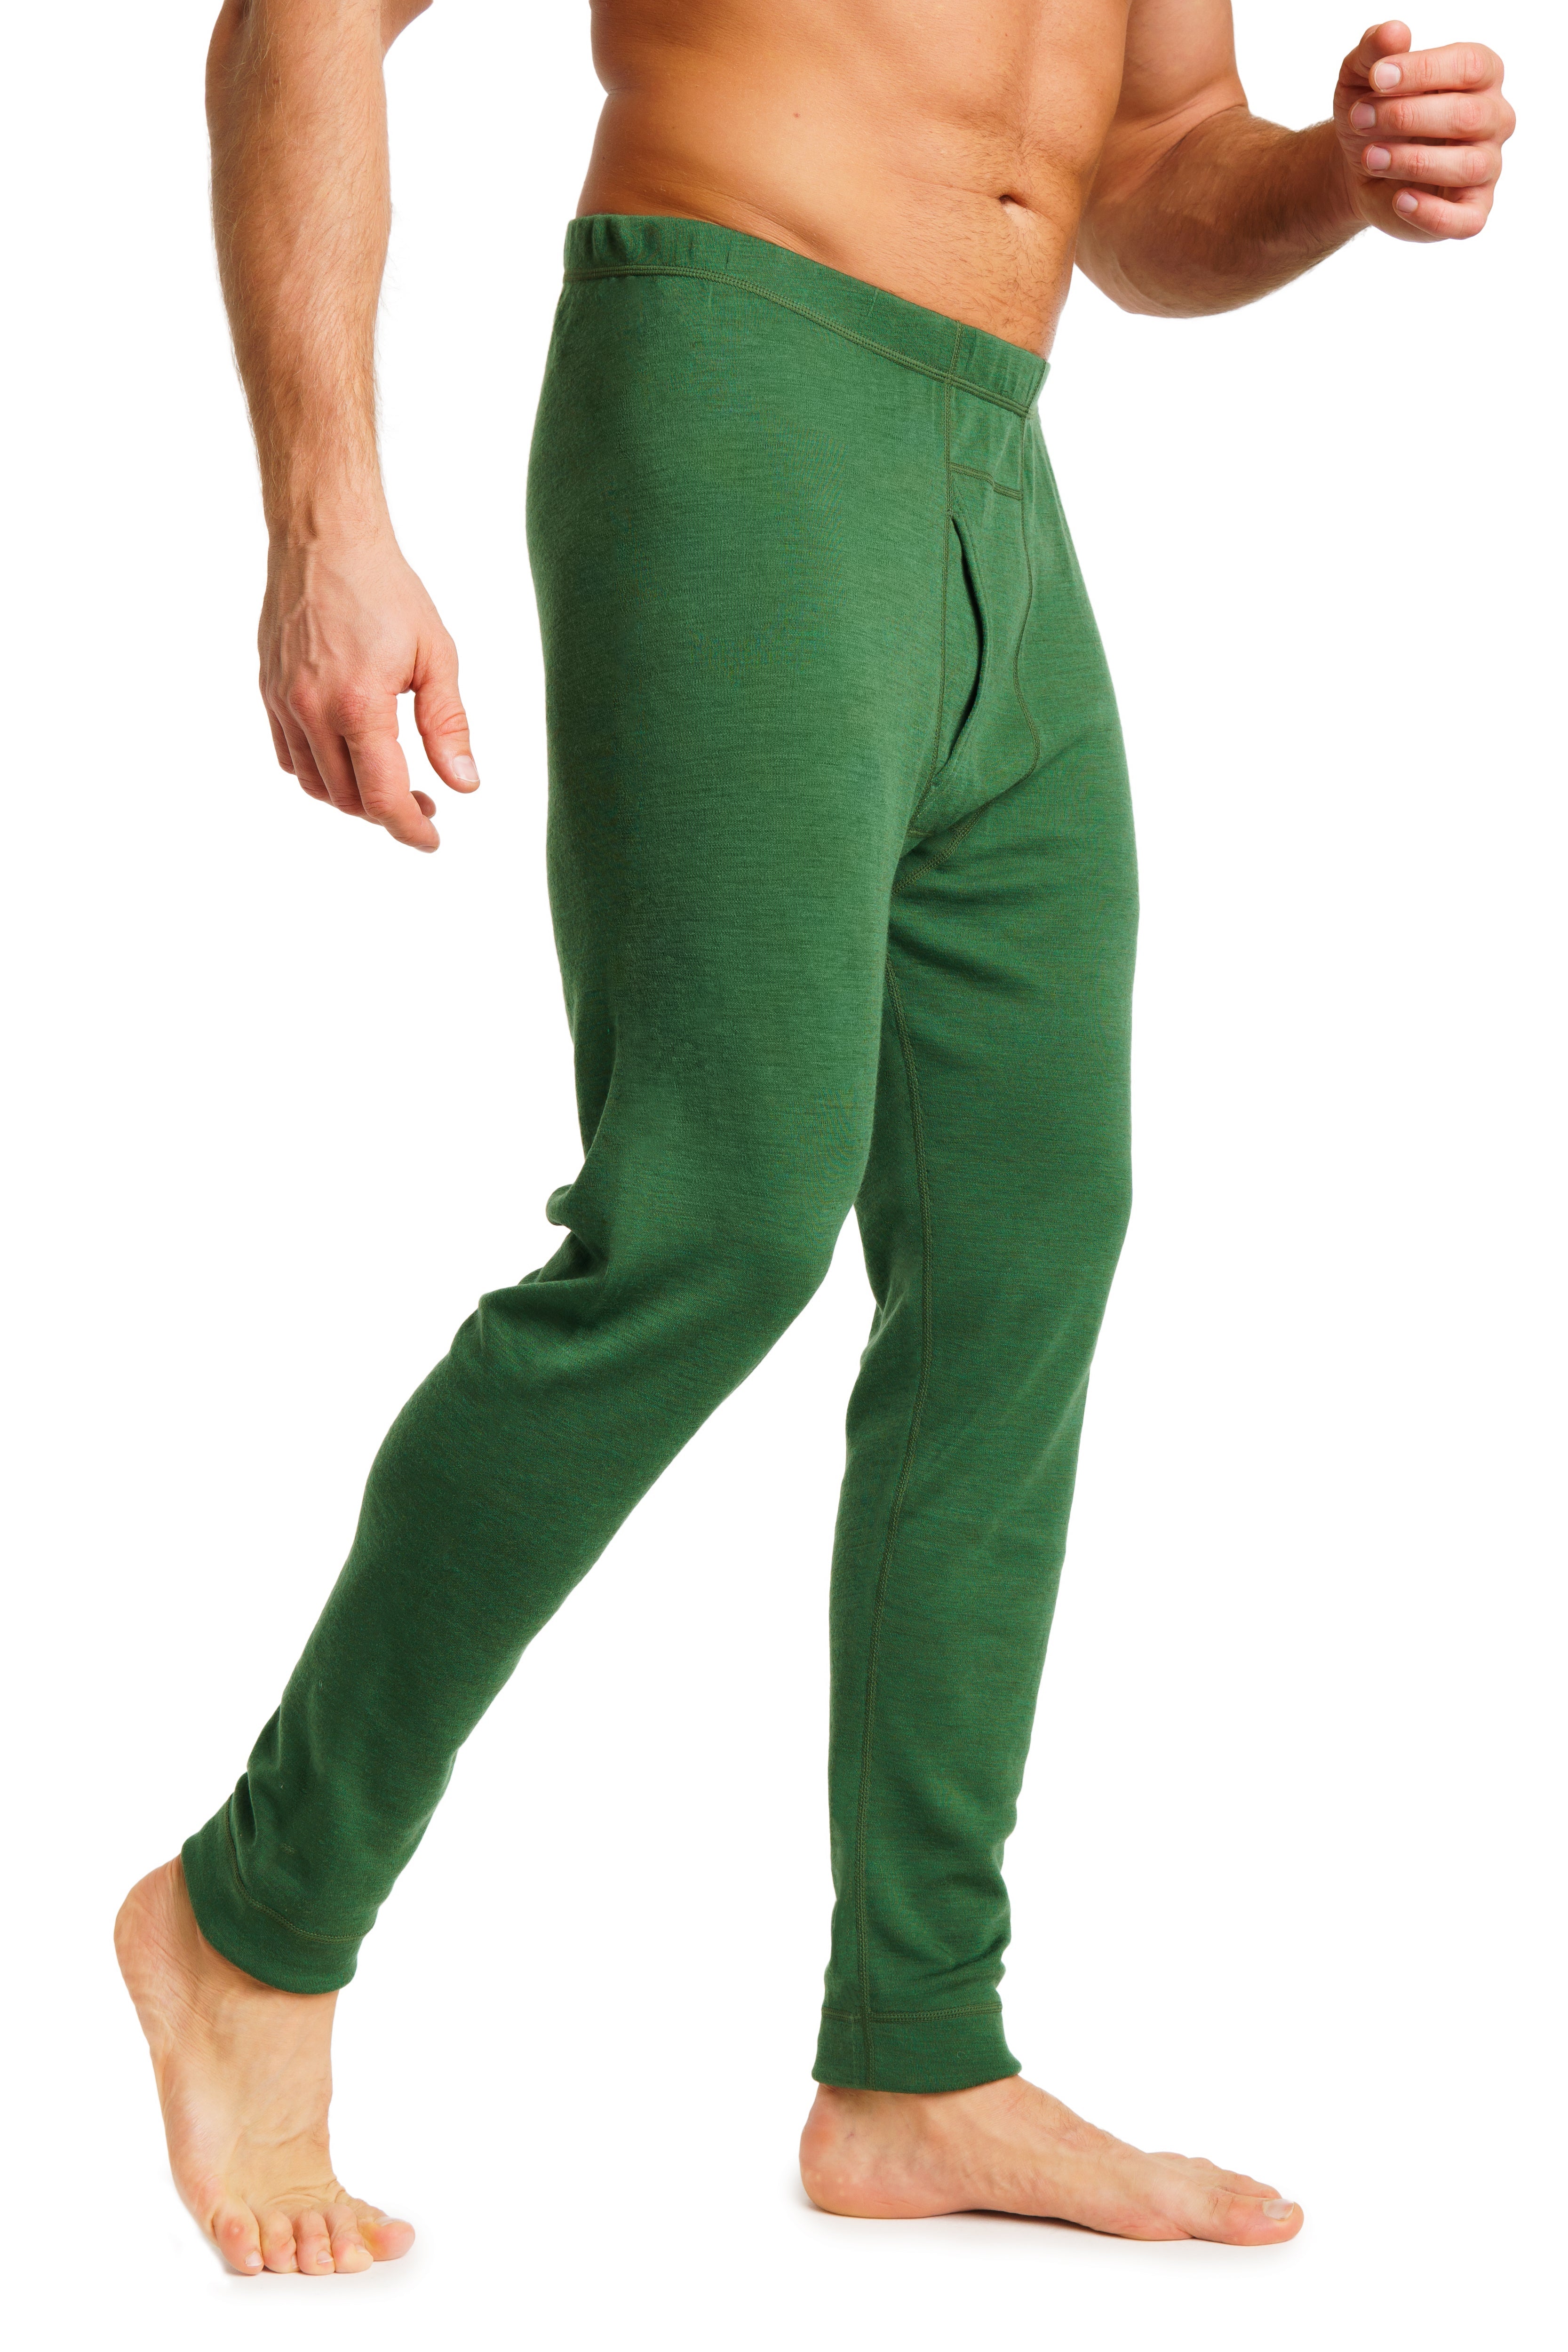 Men's Merino Wool Pants - Camel Lightweight Base Layer